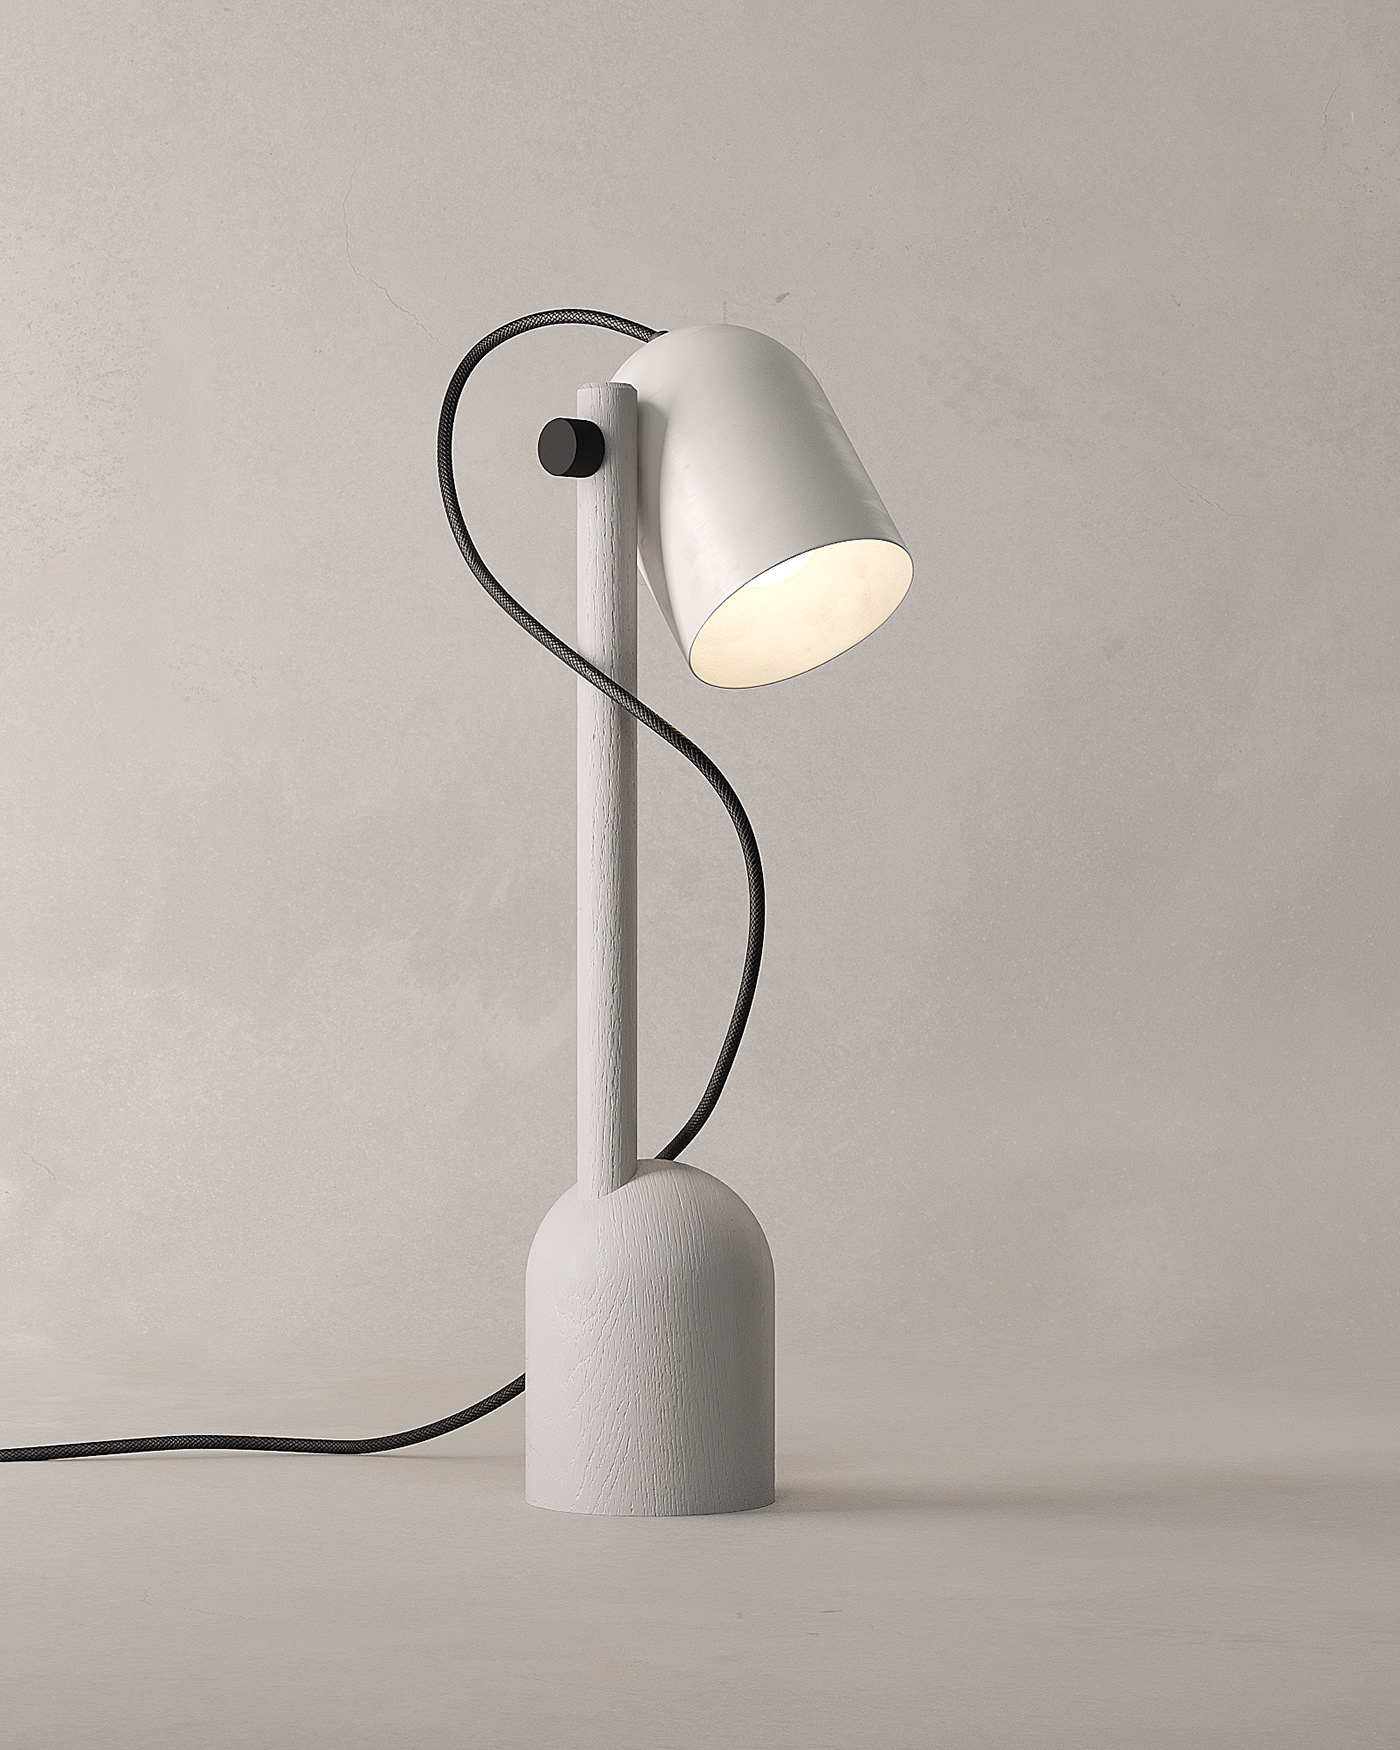 Lamp Lighting Design  modelling furniture 3D visualization archviz modern Packshot catalog renderings